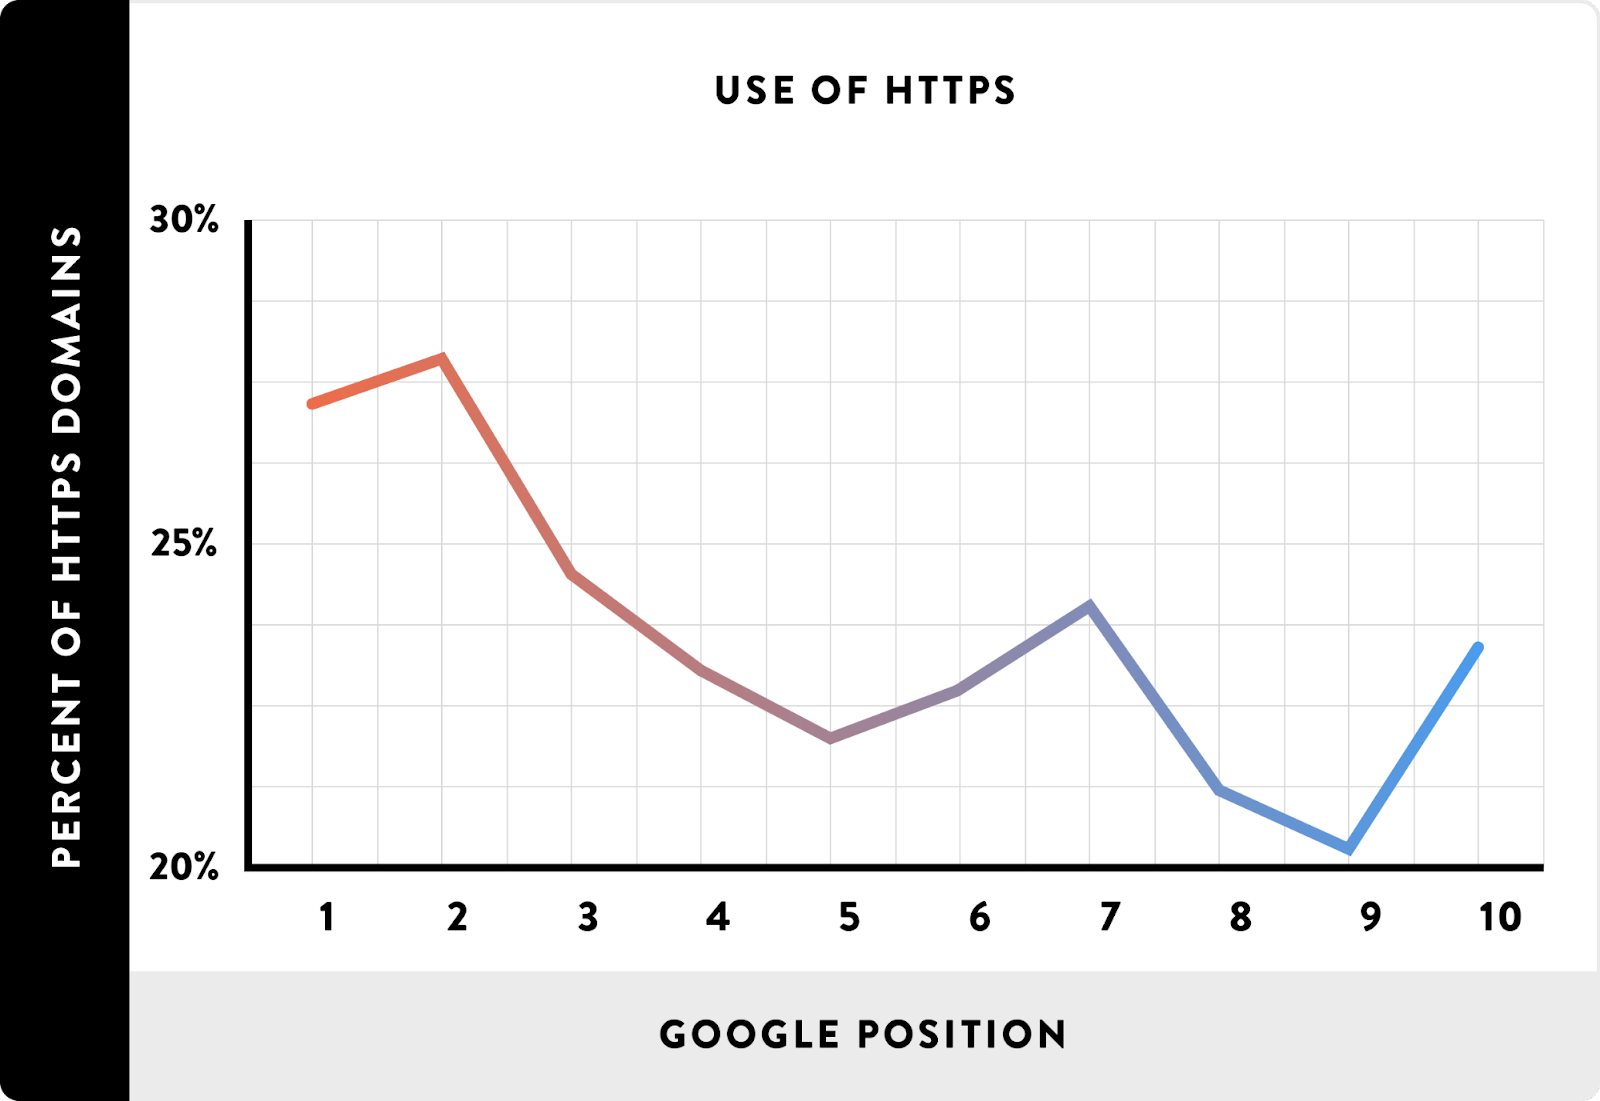 Брайан Дин из   Backlinko   также изучил возможное влияние HTTPS на рейтинг сайта в поисковой выдаче